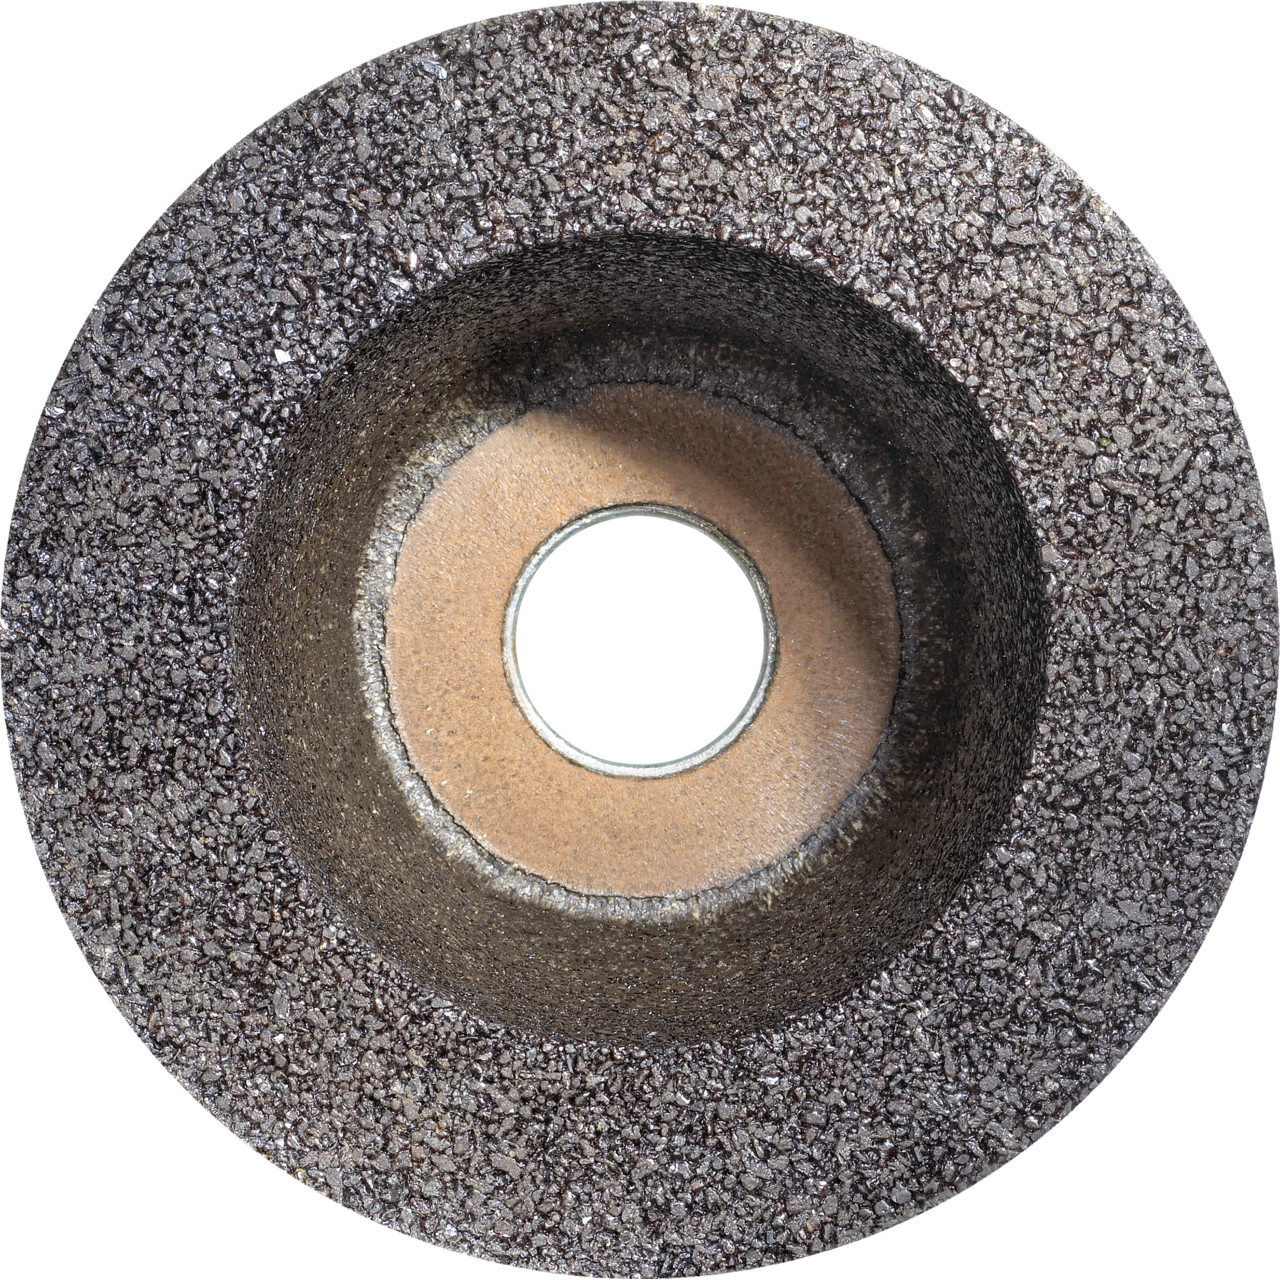 Tyrolit Pot en résine synthétique D/JxPxH 110/90x55x22,2 Pour la pierre, forme : 11BT (pot à poncer), art. 895679